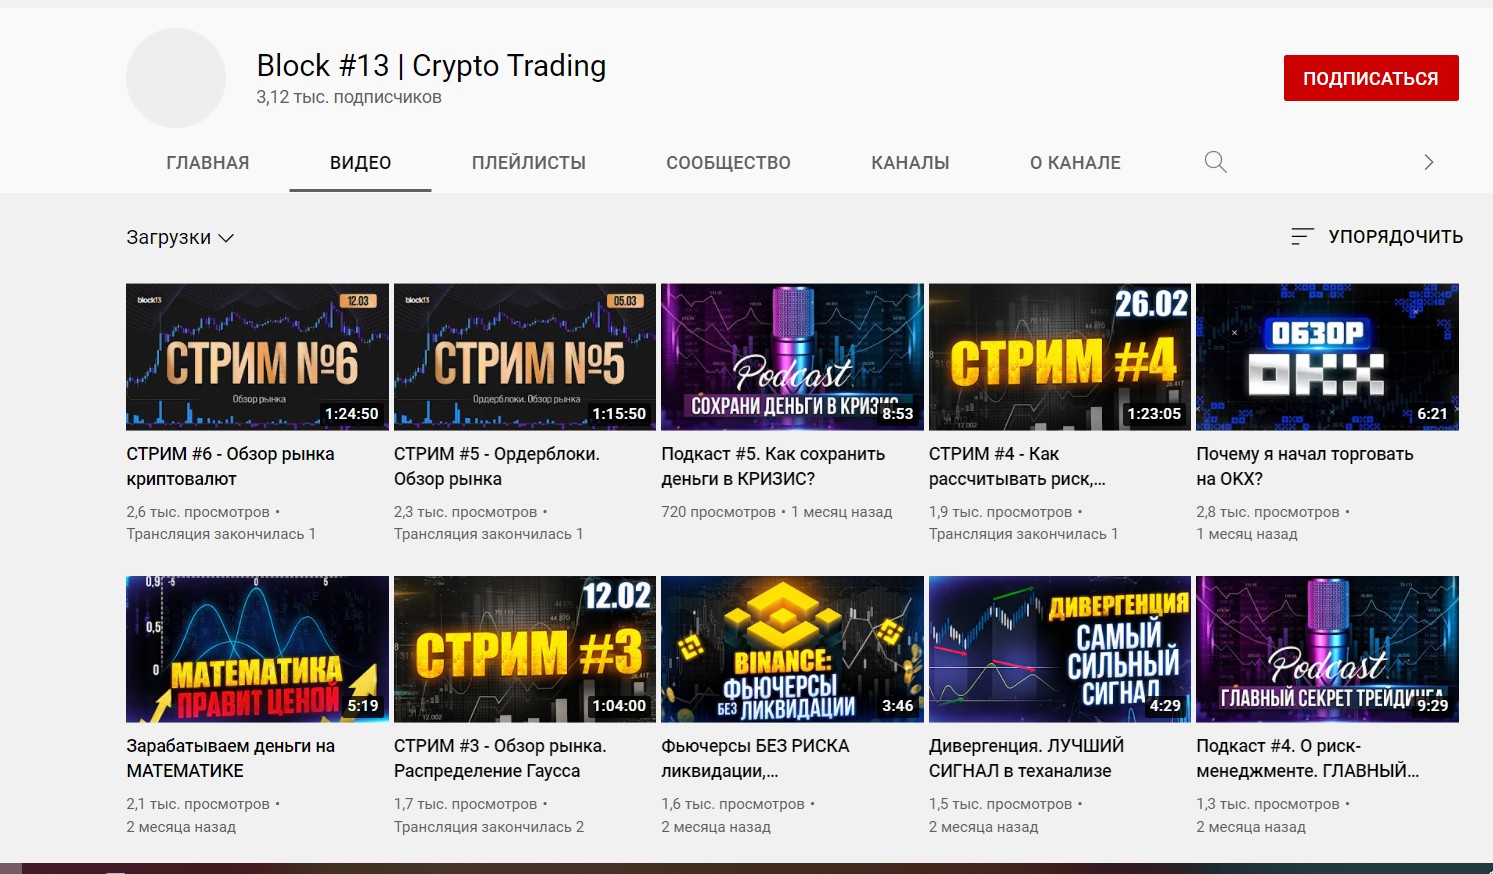 Канал YouTube Block #13 Crypto Trading